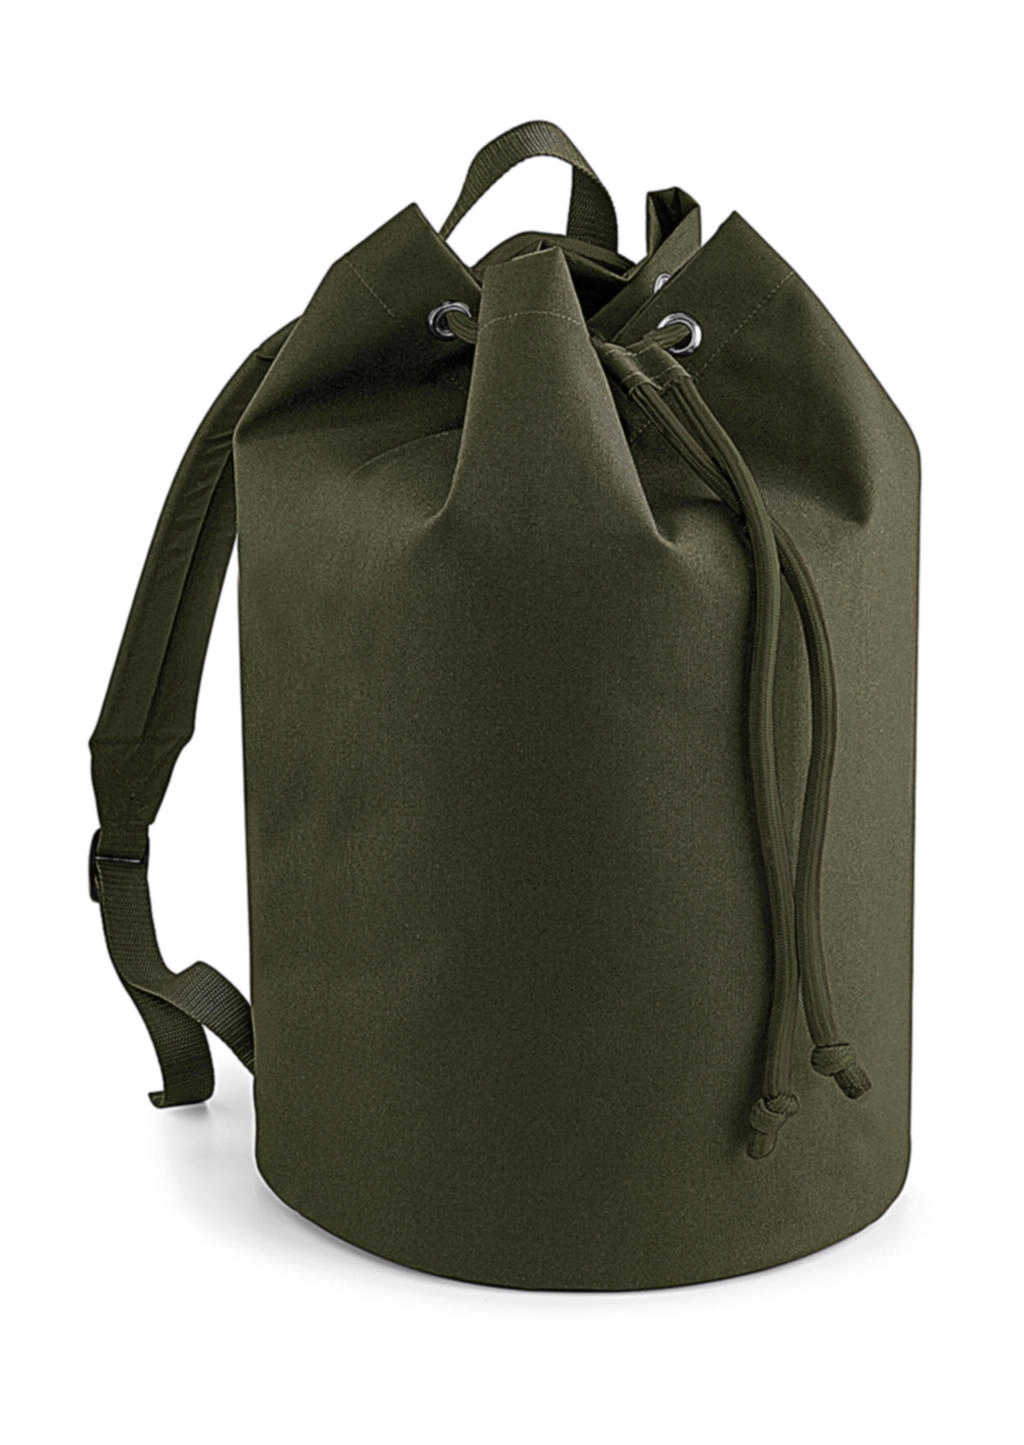 Original Drawstring Backpack zum Besticken und Bedrucken in der Farbe Military Green mit Ihren Logo, Schriftzug oder Motiv.